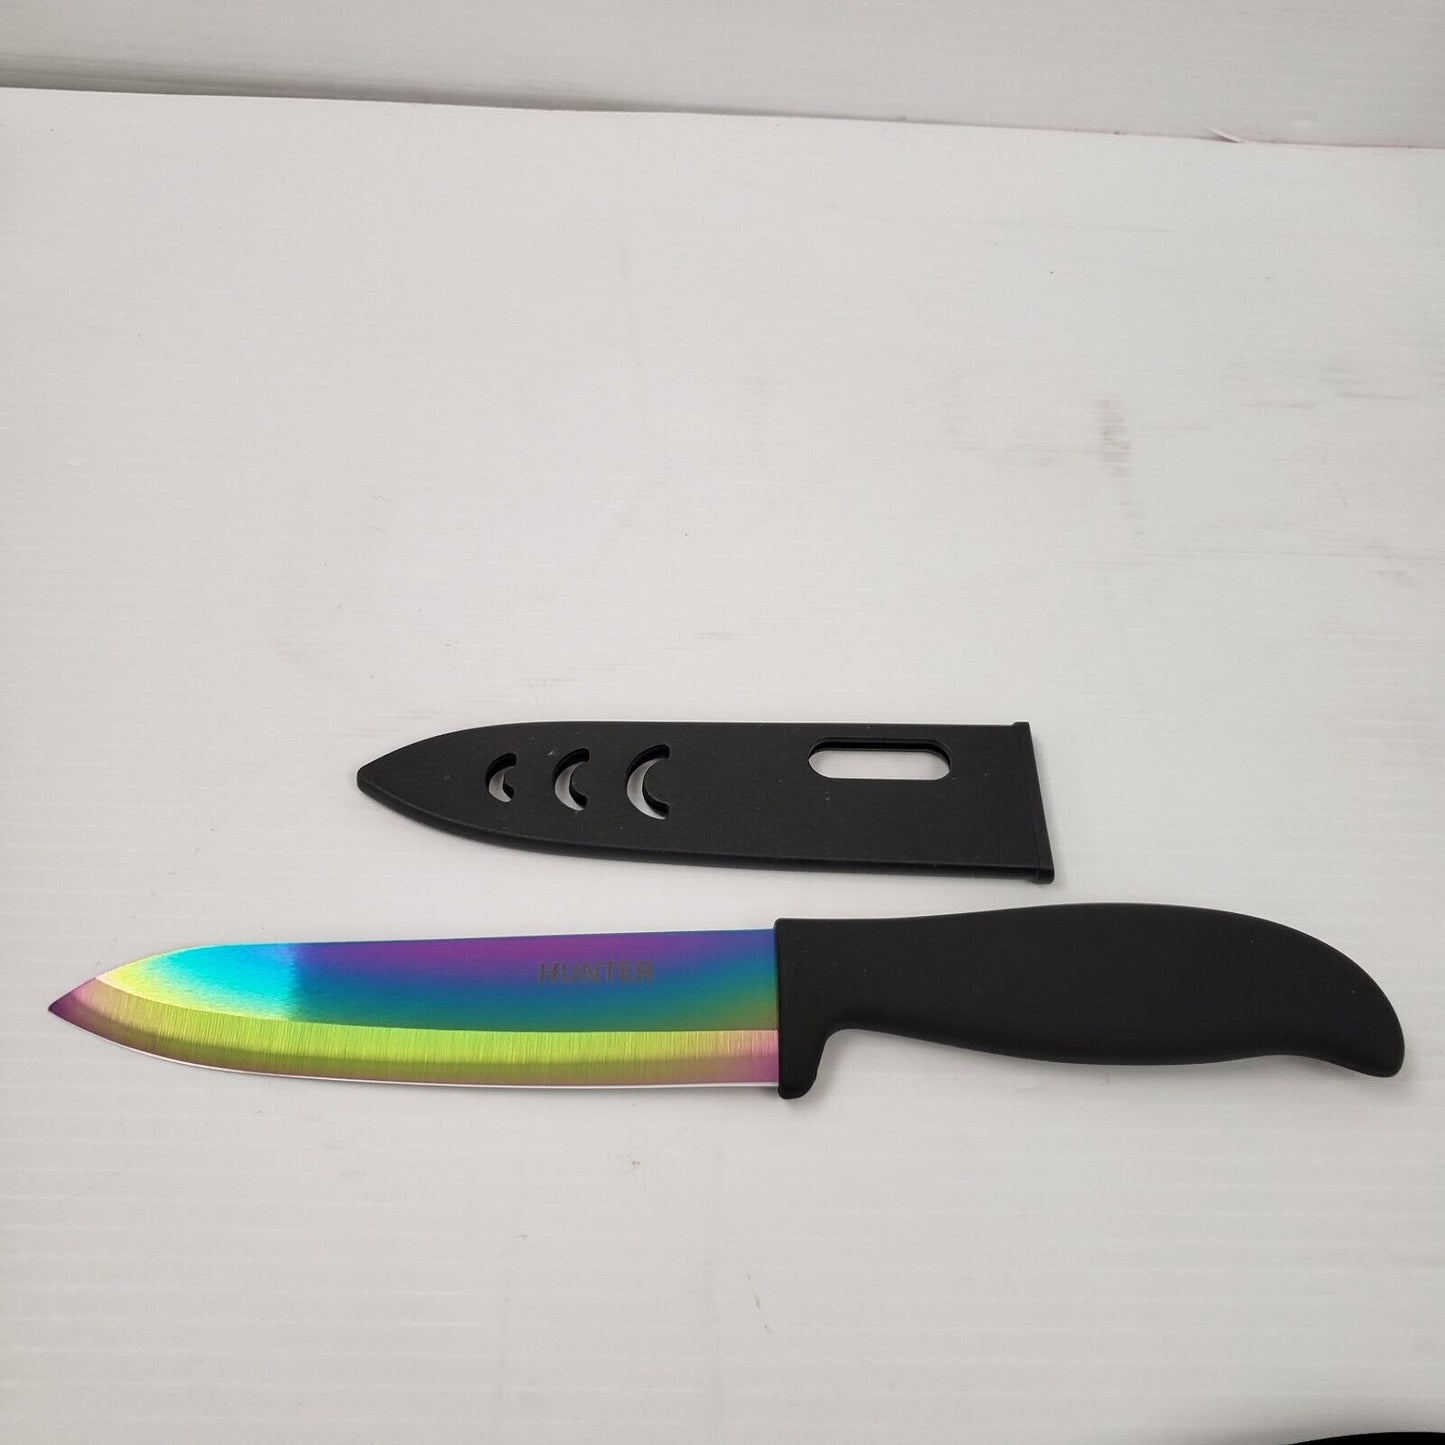 (28285-1) Ensemble de couteaux de cuisine Hunter 4 pièces avec support